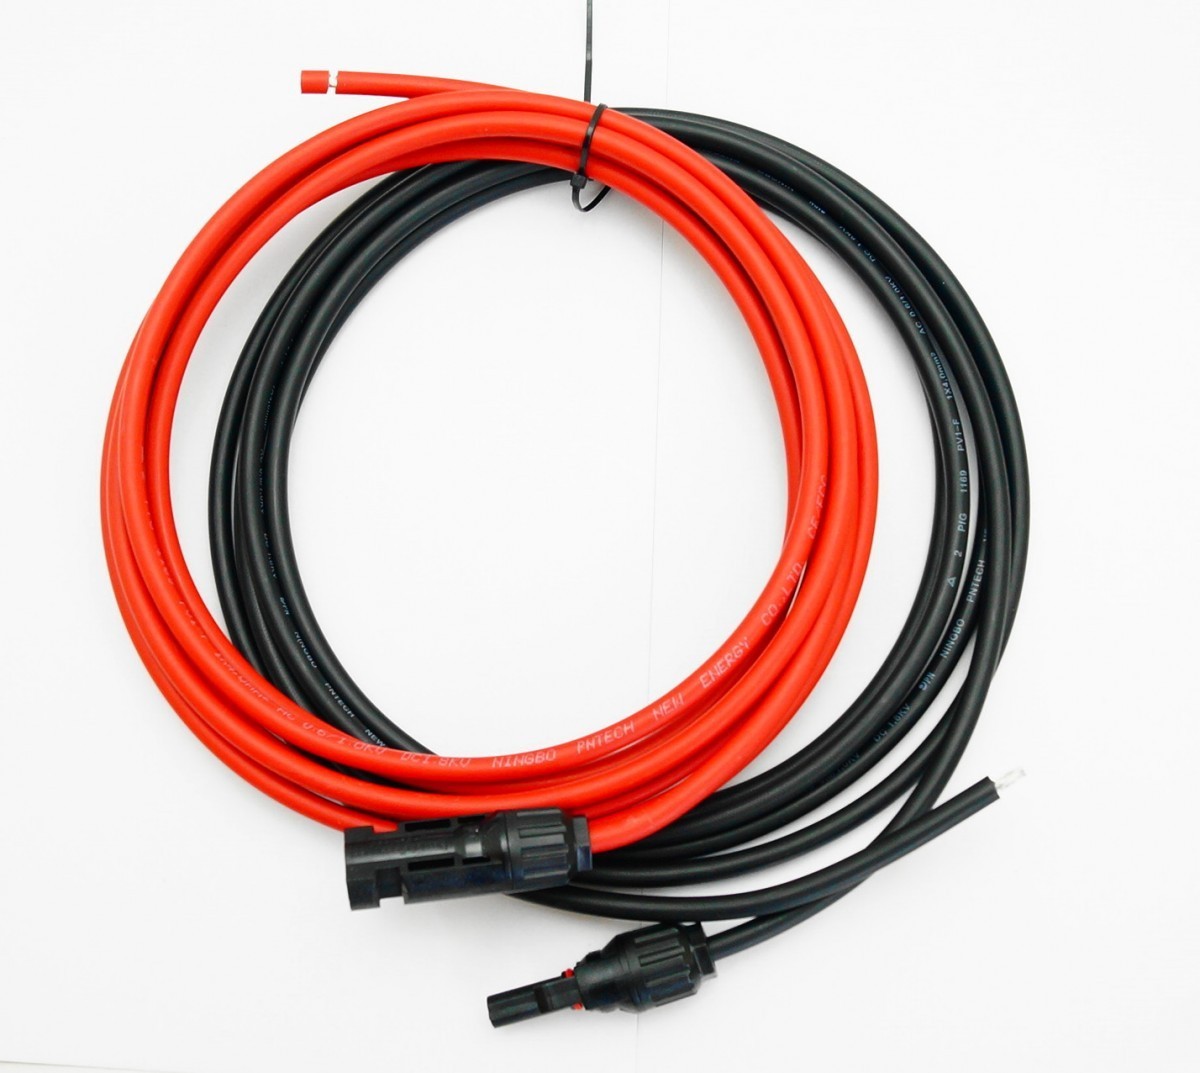 ソーラーケーブル延長ケーブル MC4 コネクタ付き 5m 4.0sq 赤と黒2本セット/ケーブル径6mm_画像2